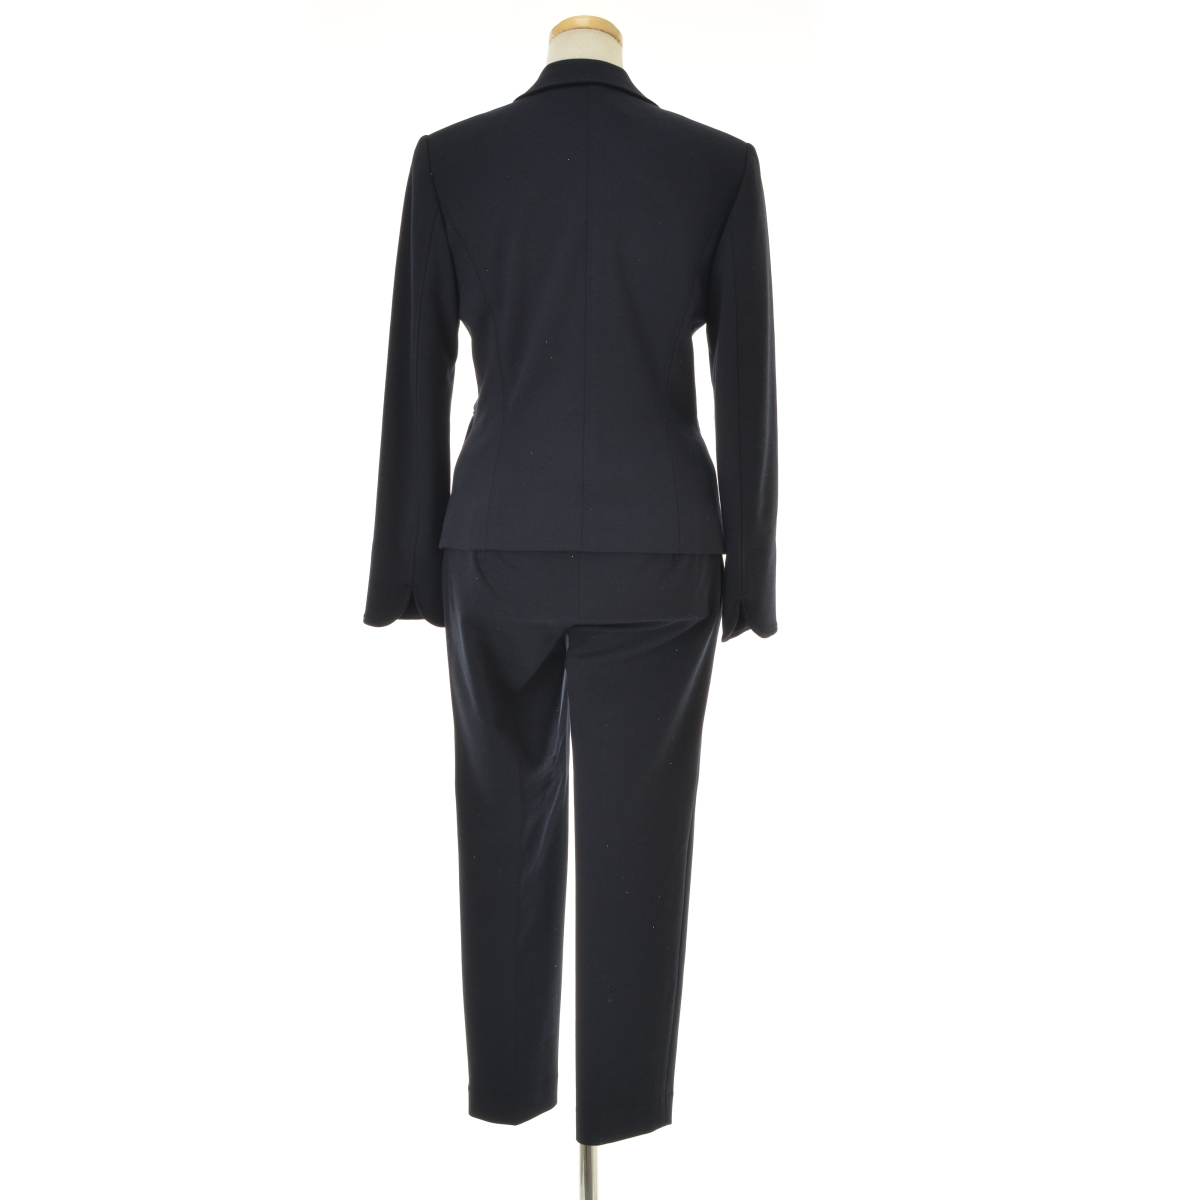 THE SUIT COMPANY / スーツカンパニー destyle パンツスーツ -ブランド古着の買取販売カンフル